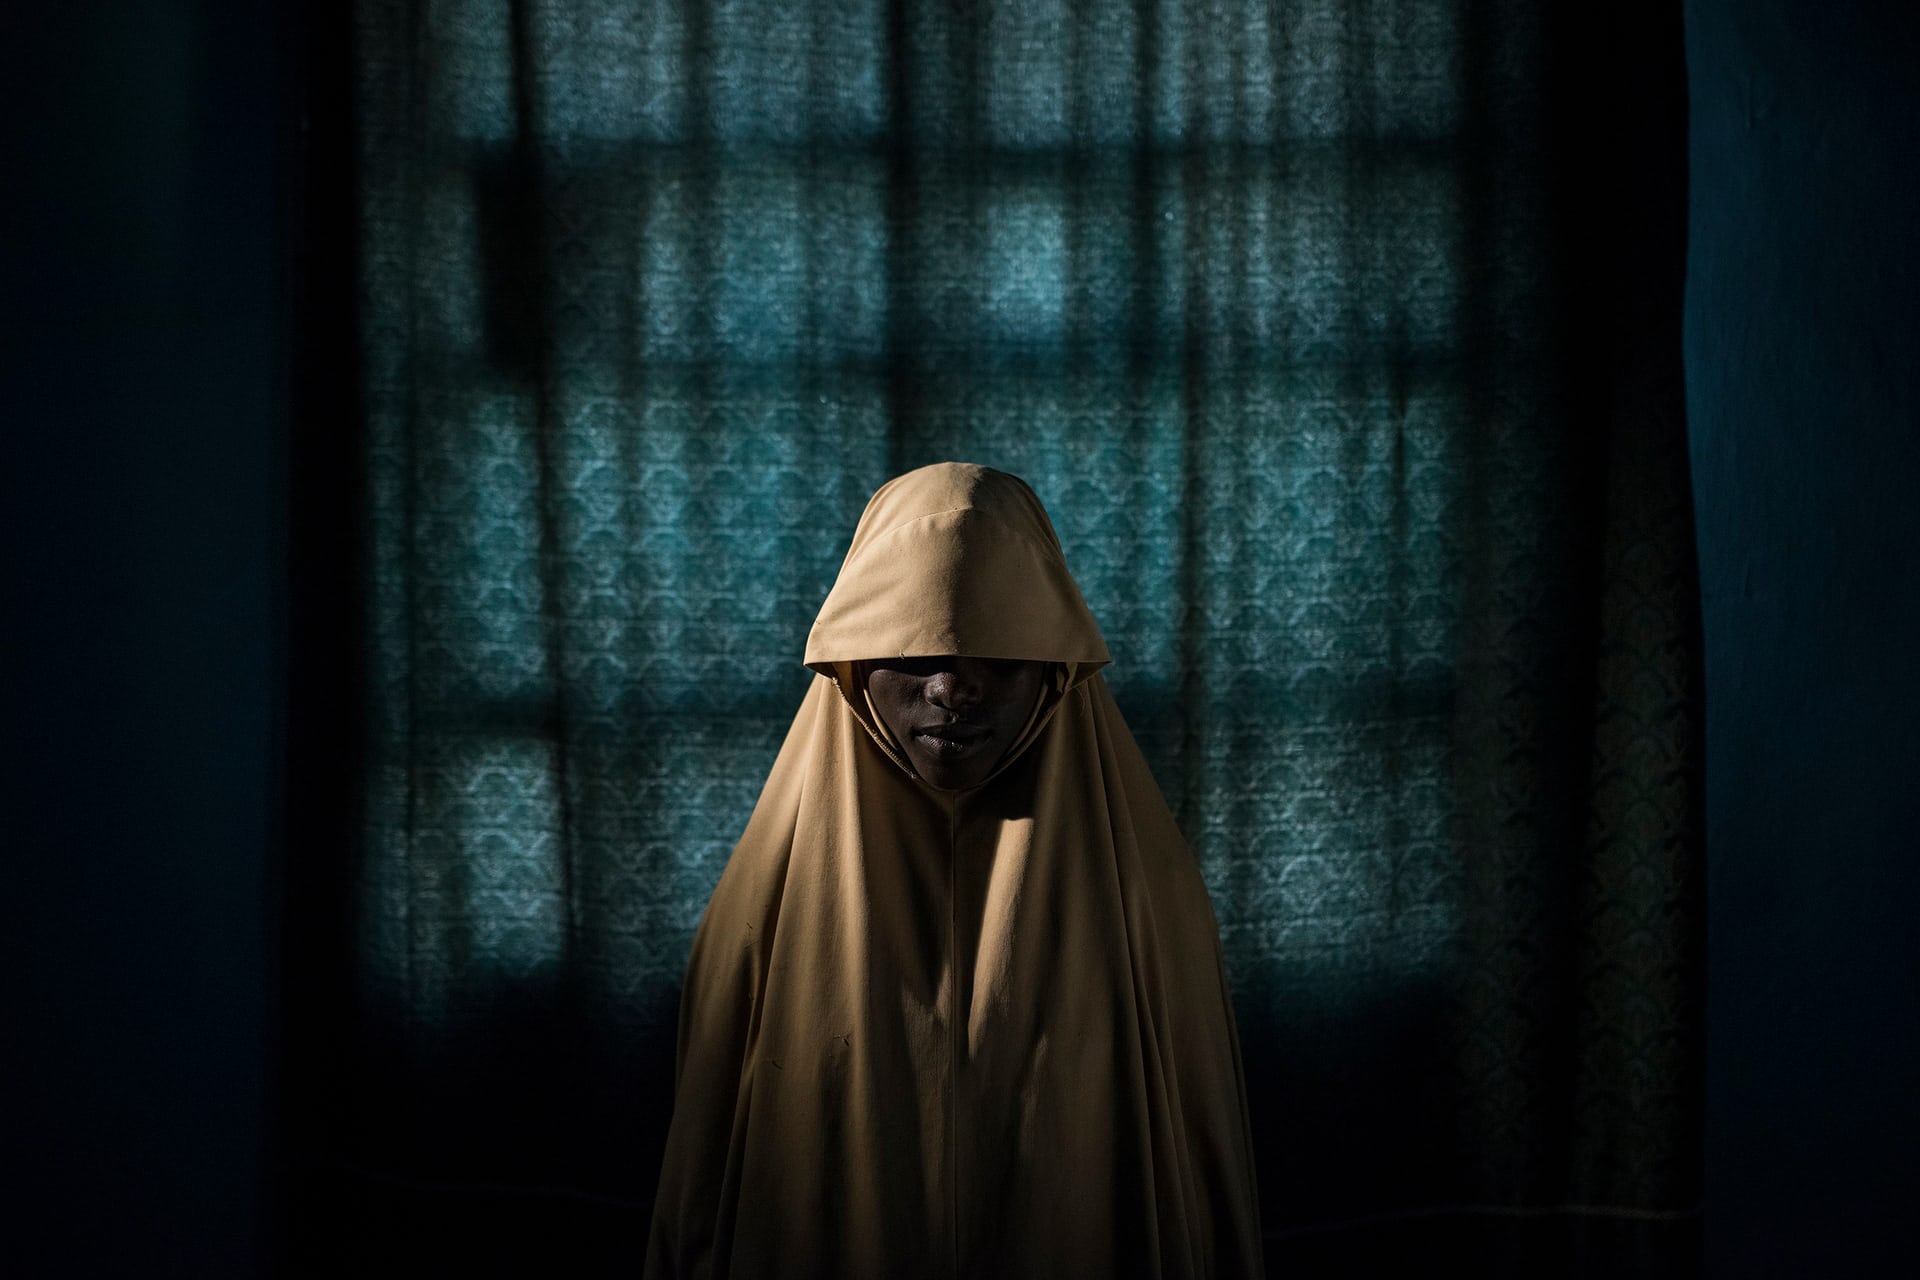 Giải nhất hạng mục Con người. Aisha 14 tuổi, sống ở Maiduguri, bang Borno của nước Nigeria. Cô bé bị bắt cóc bởi nhóm vũ trang Hồi giáo Boko Haram và giao cho nhiệm vụ đánh bom liều chết. Trên đường làm nhiệm vụ, Aisha đã không lao vào đám đông và tự ôm lấy chất nổ để chết. Rất may ngòi nổ không kích hoạt và cô bé được cứu sống. Ảnh: Adam Ferguson/New York Times/Handout/EPA.